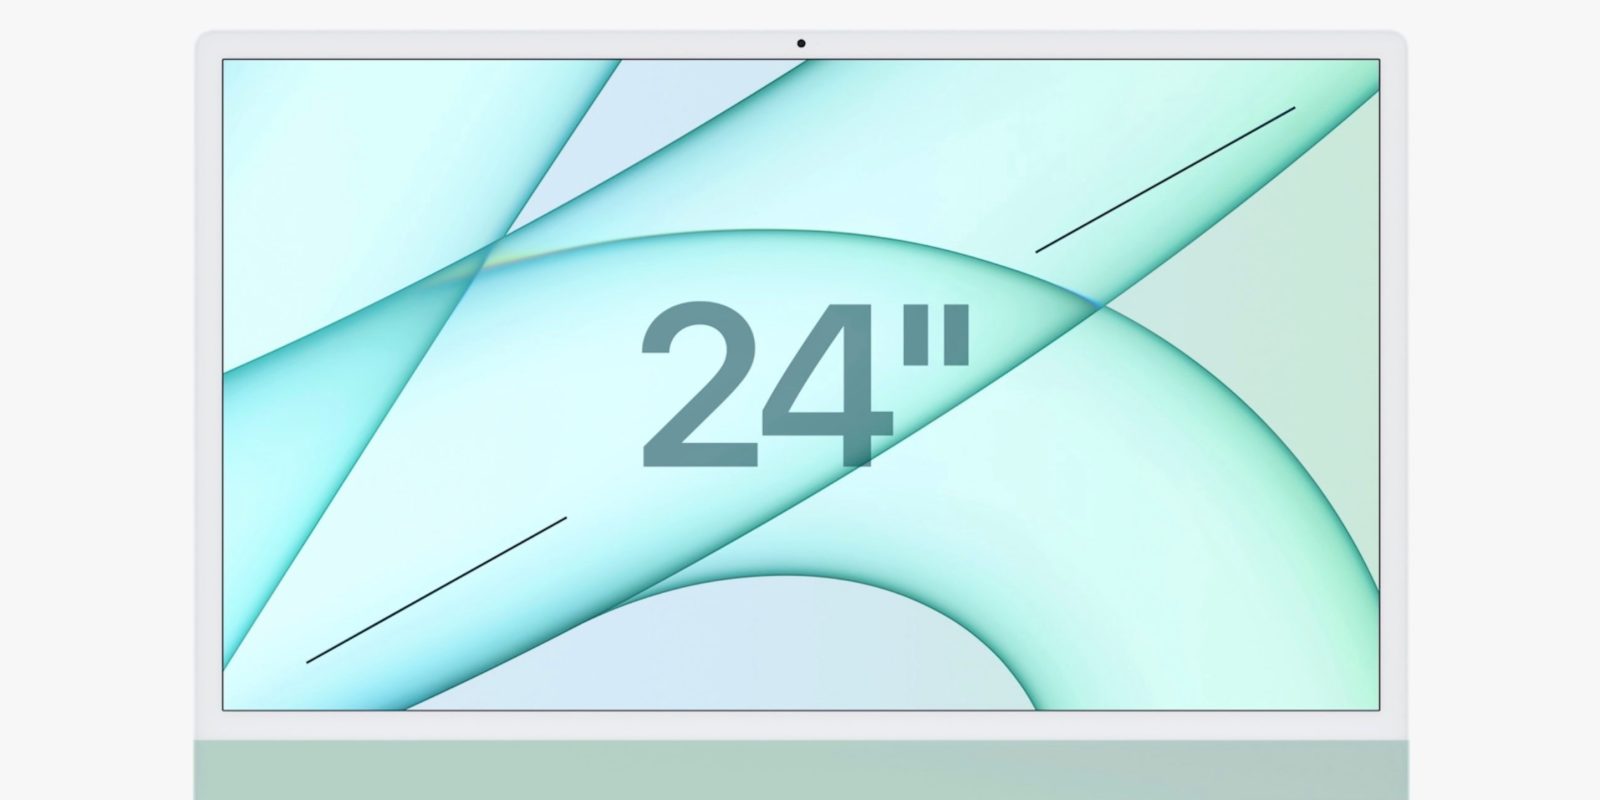 iMac Target Display Mode